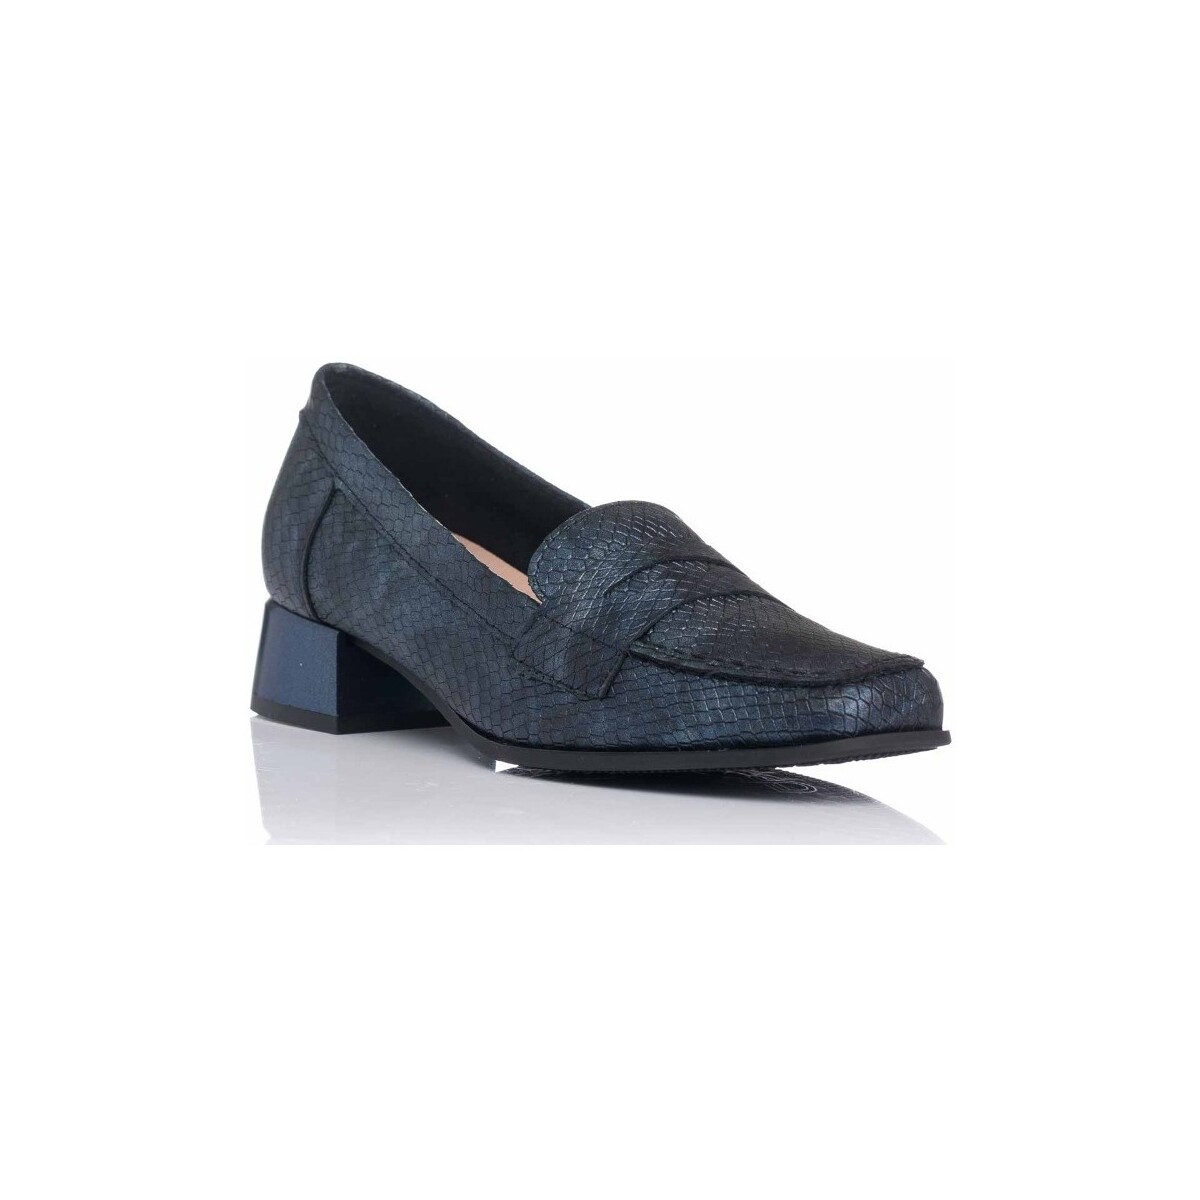 Schuhe Damen Slipper Pitillos 5061 Blau